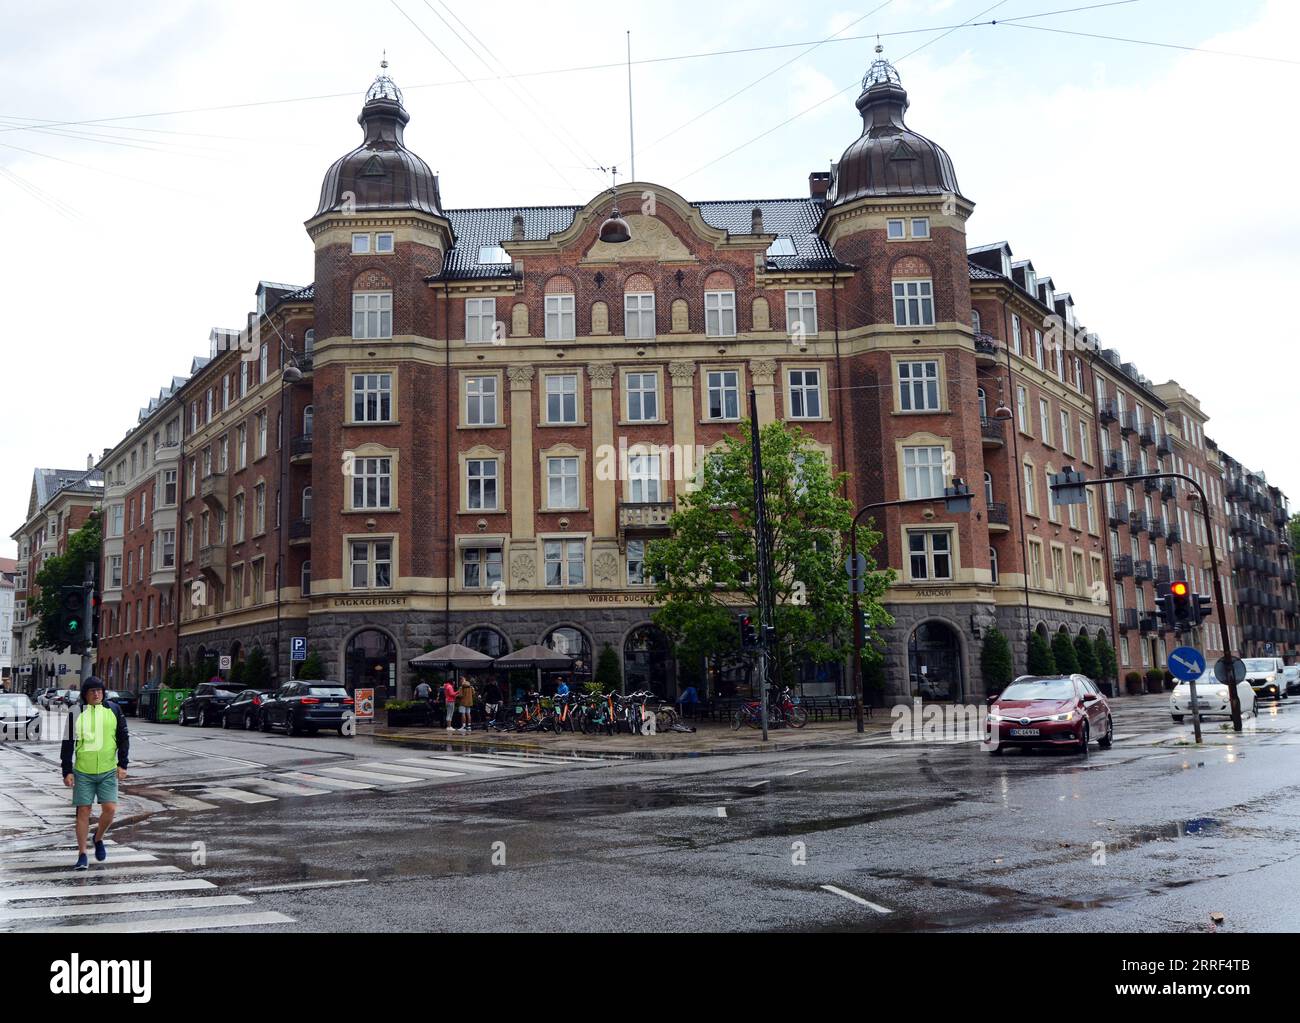 A beautiful old building on the corner of Esplanaden and Grønningen in Copenhagen, Denmark. Stock Photo